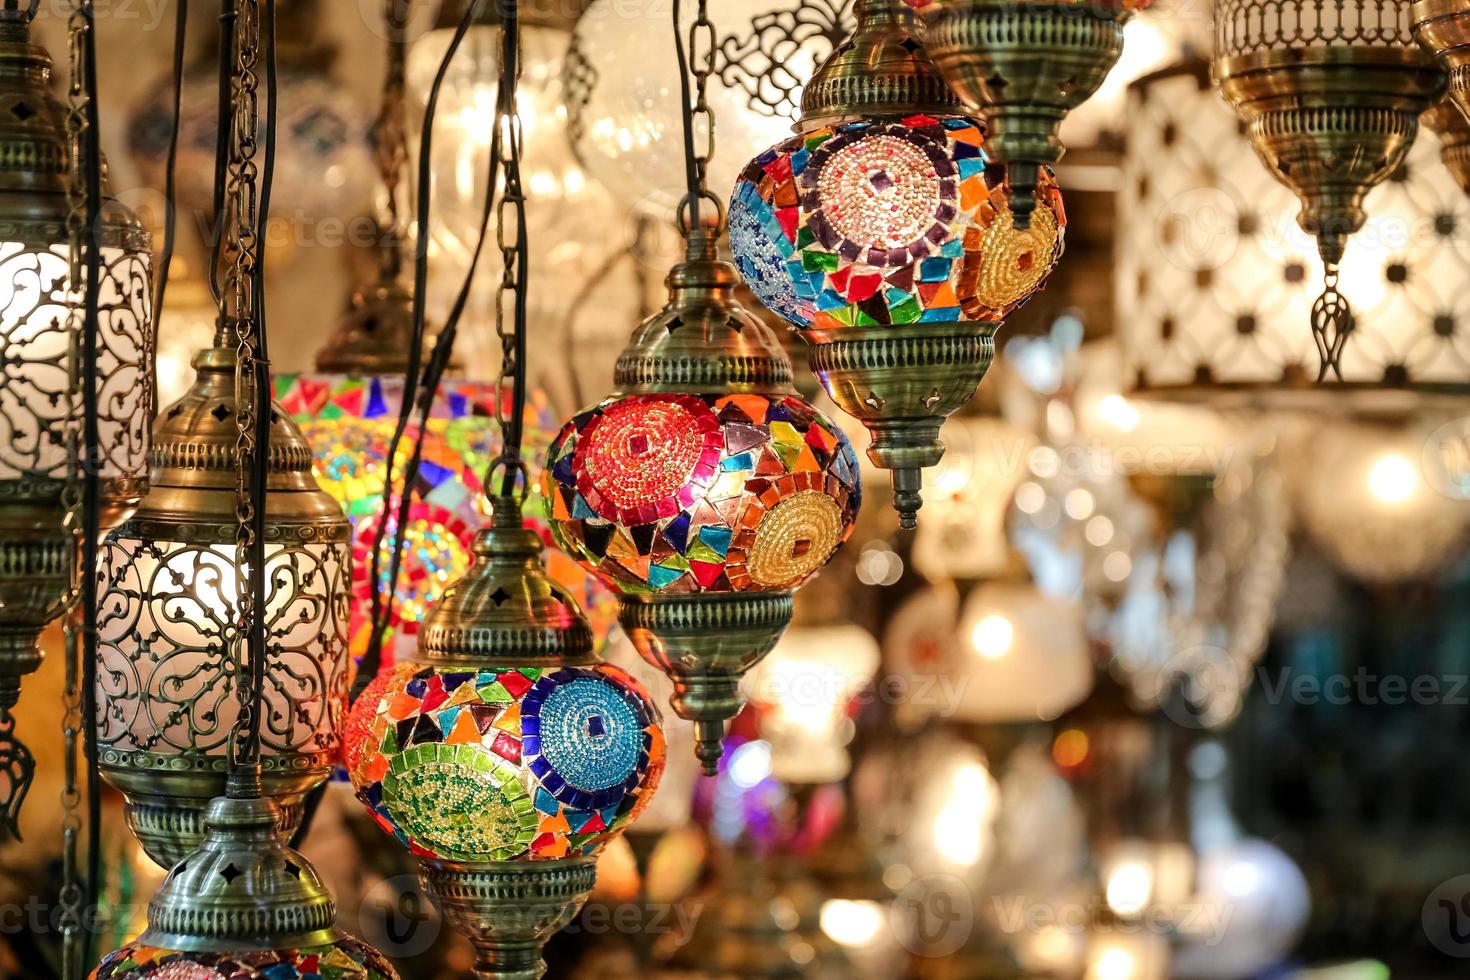 lanternes turques colorées photo